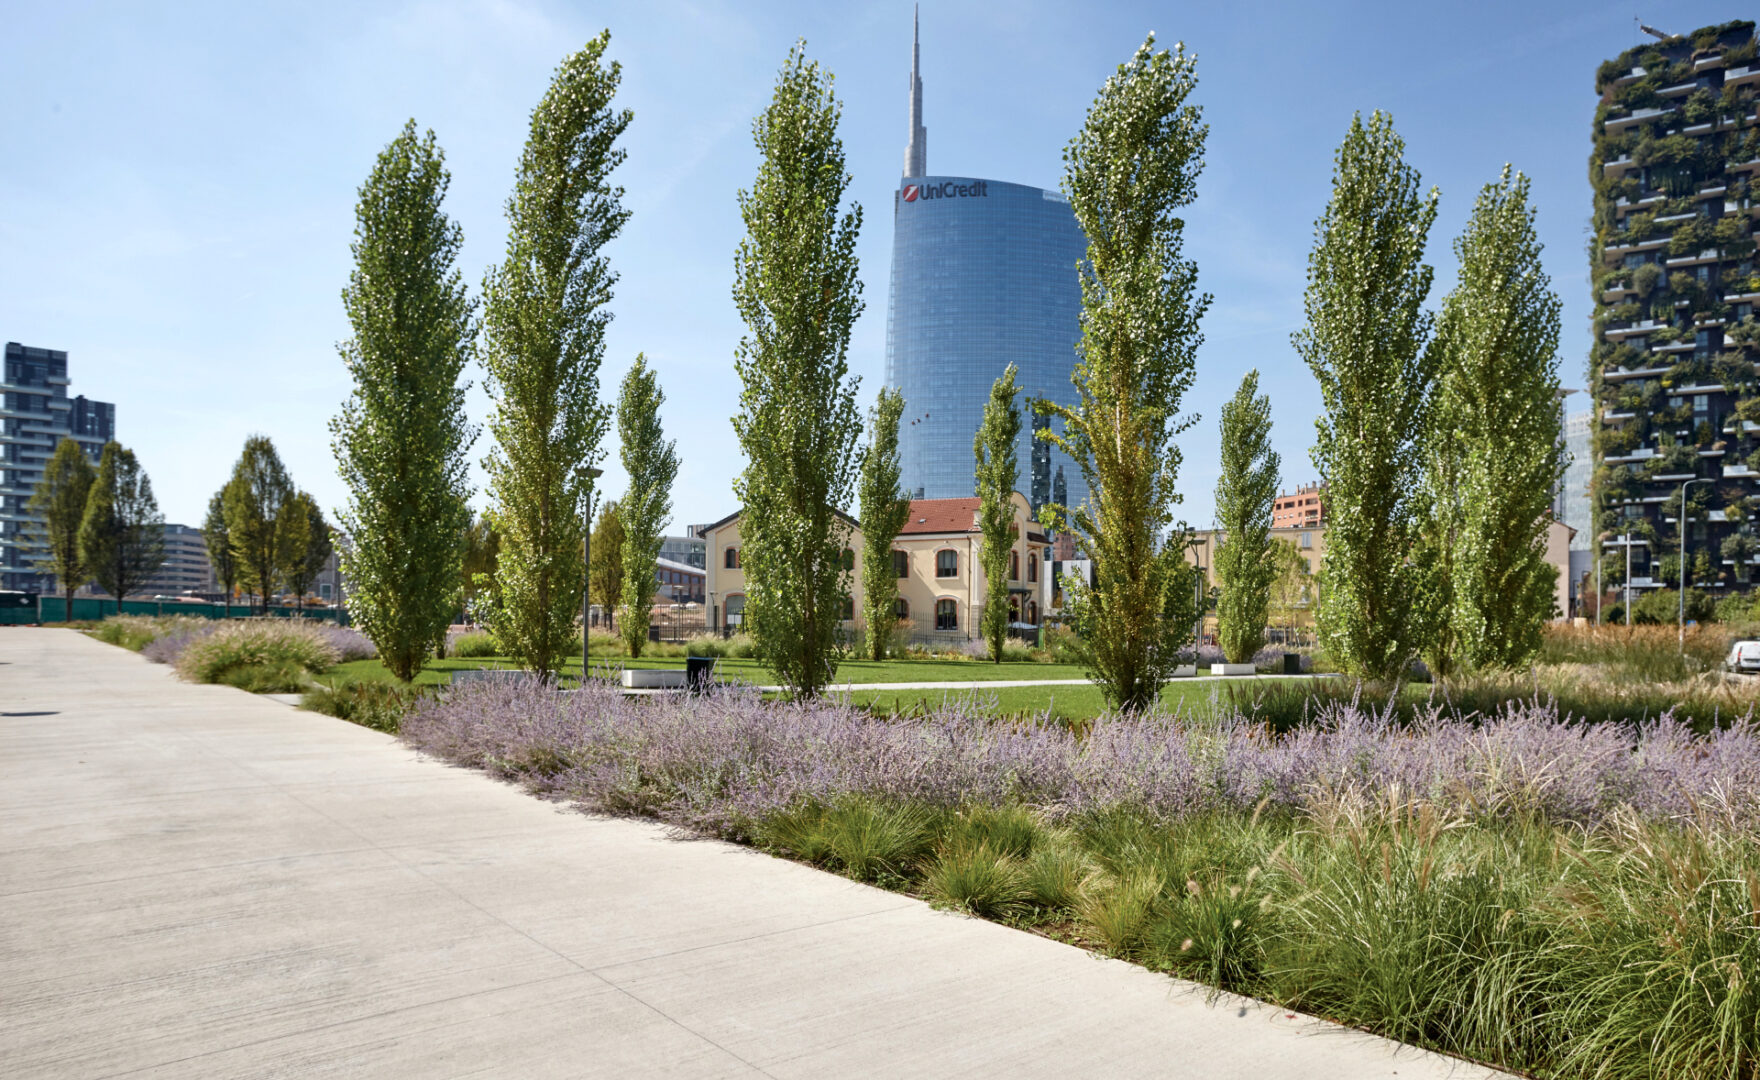 Percorsi pedonali realizzati con calcestruzzo i.design MOSAICO all'interno del Parco Biblioteca degli Alberi di Milano